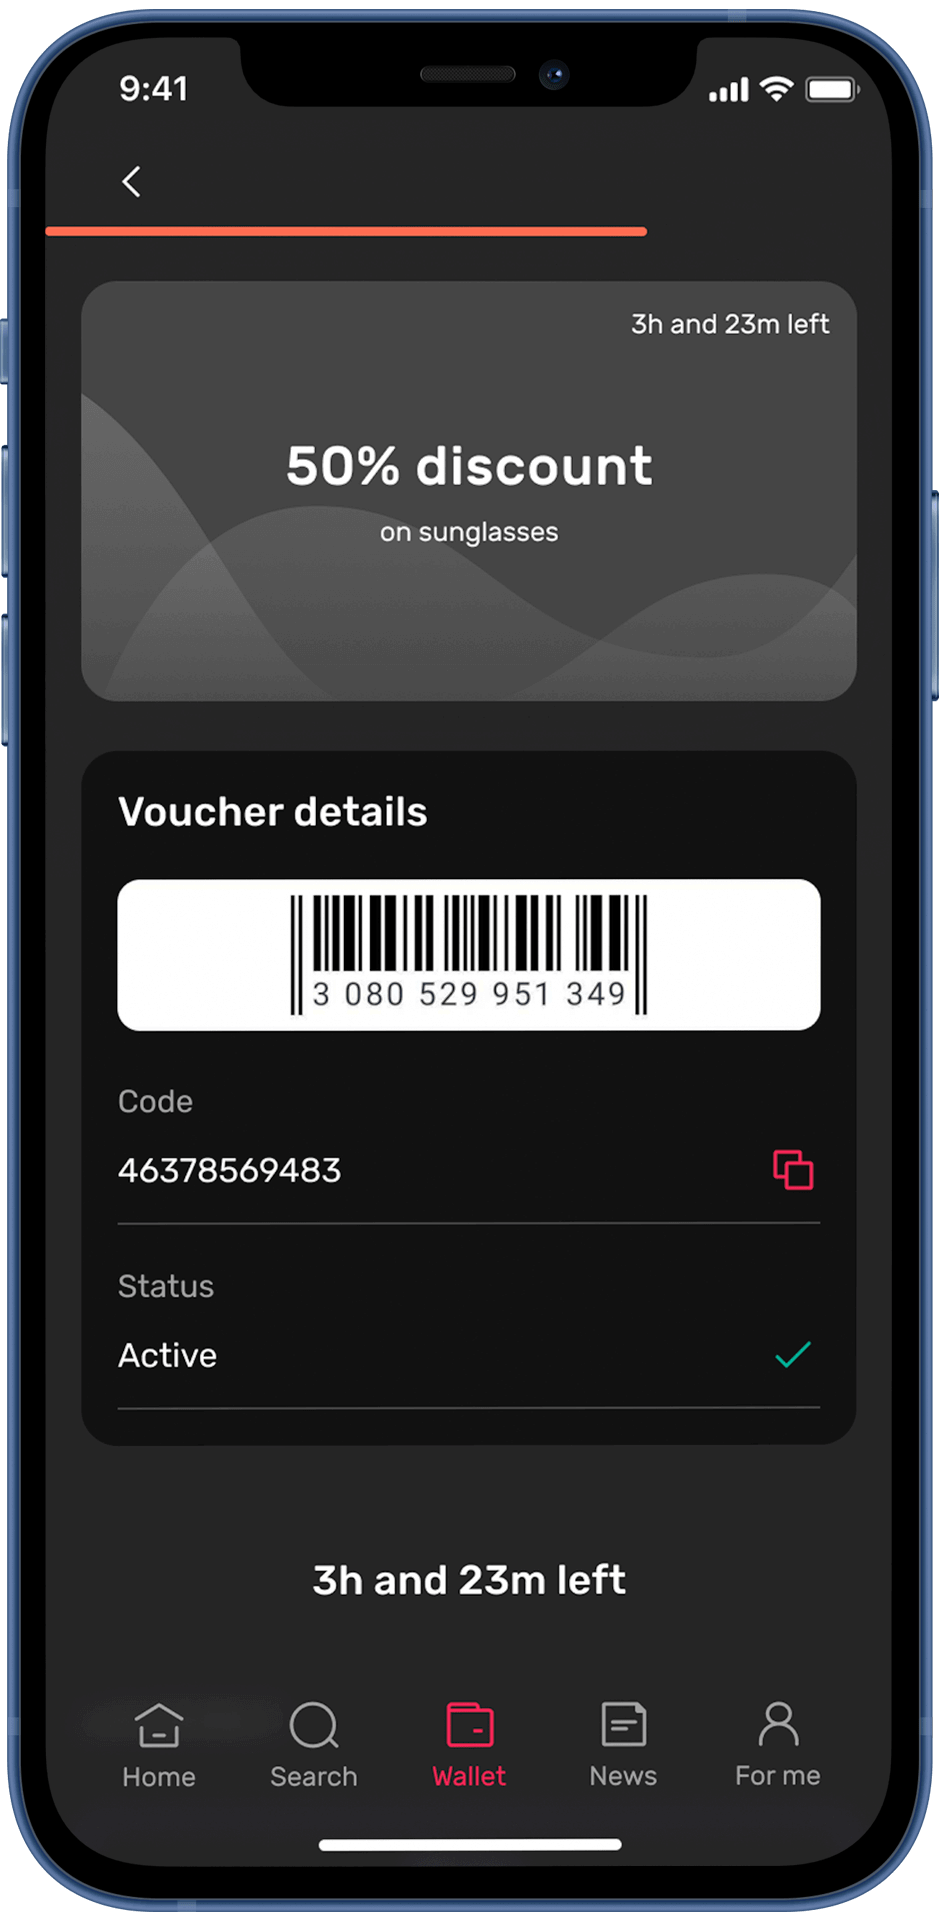 In-app vouchers